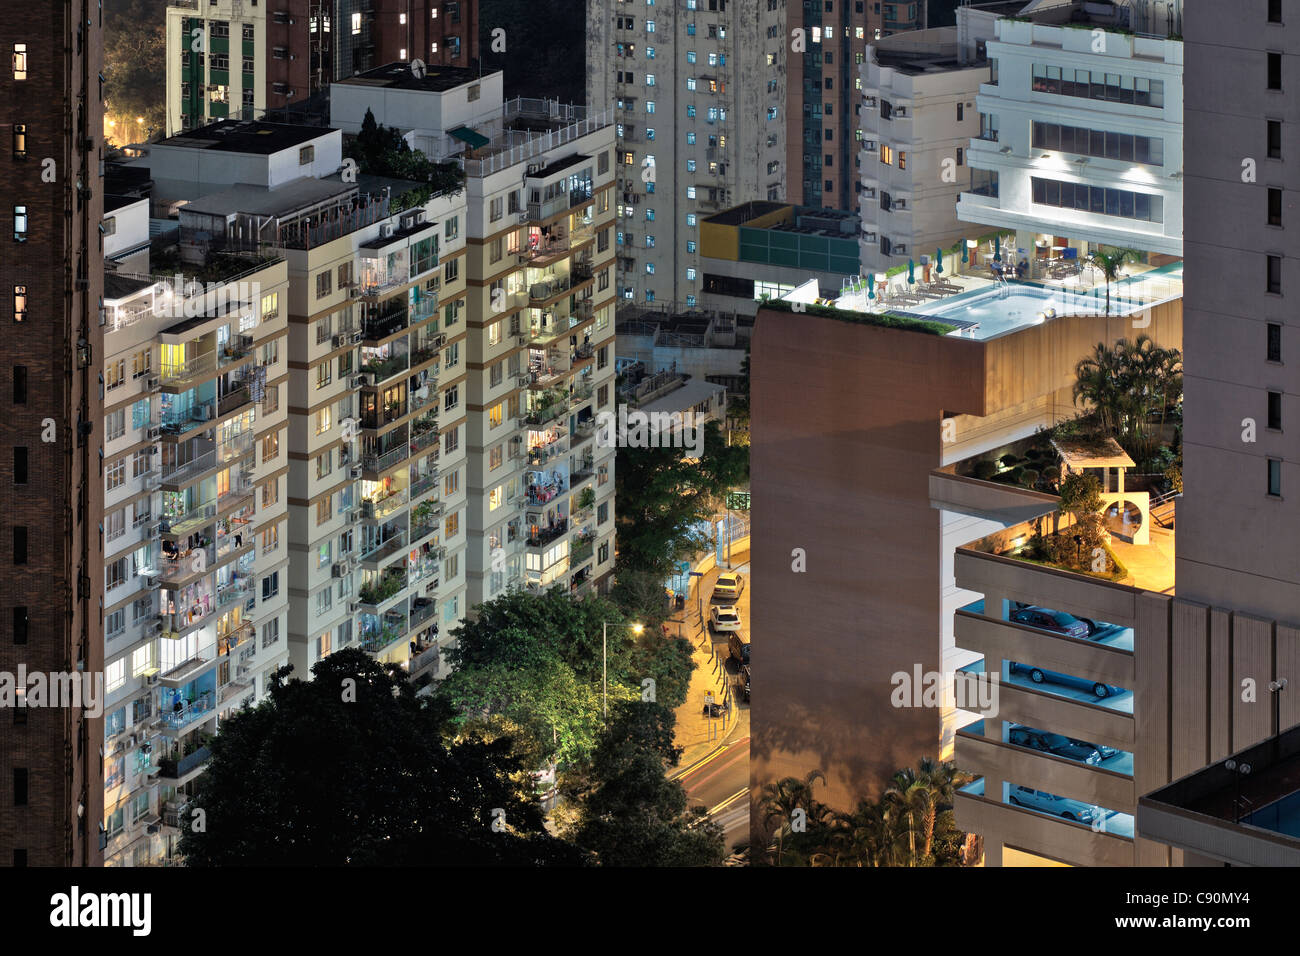 Hong Kong housing estate with swimming pool at night, Hong Kong, China Stock Photo